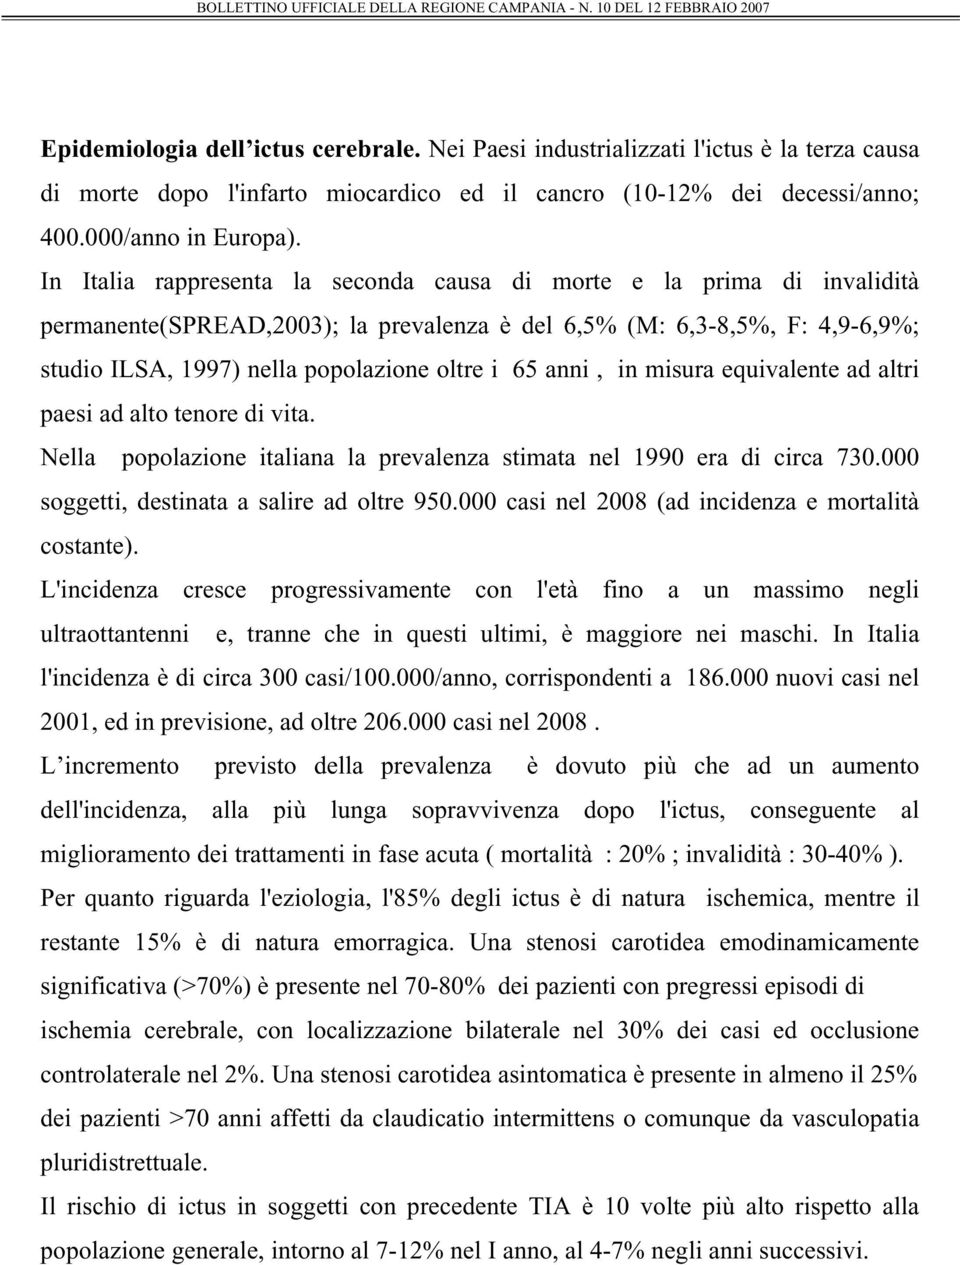 anni, in misura equivalente ad altri paesi ad alto tenore di vita. Nella popolazione italiana la prevalenza stimata nel 1990 era di circa 730.000 soggetti, destinata a salire ad oltre 950.